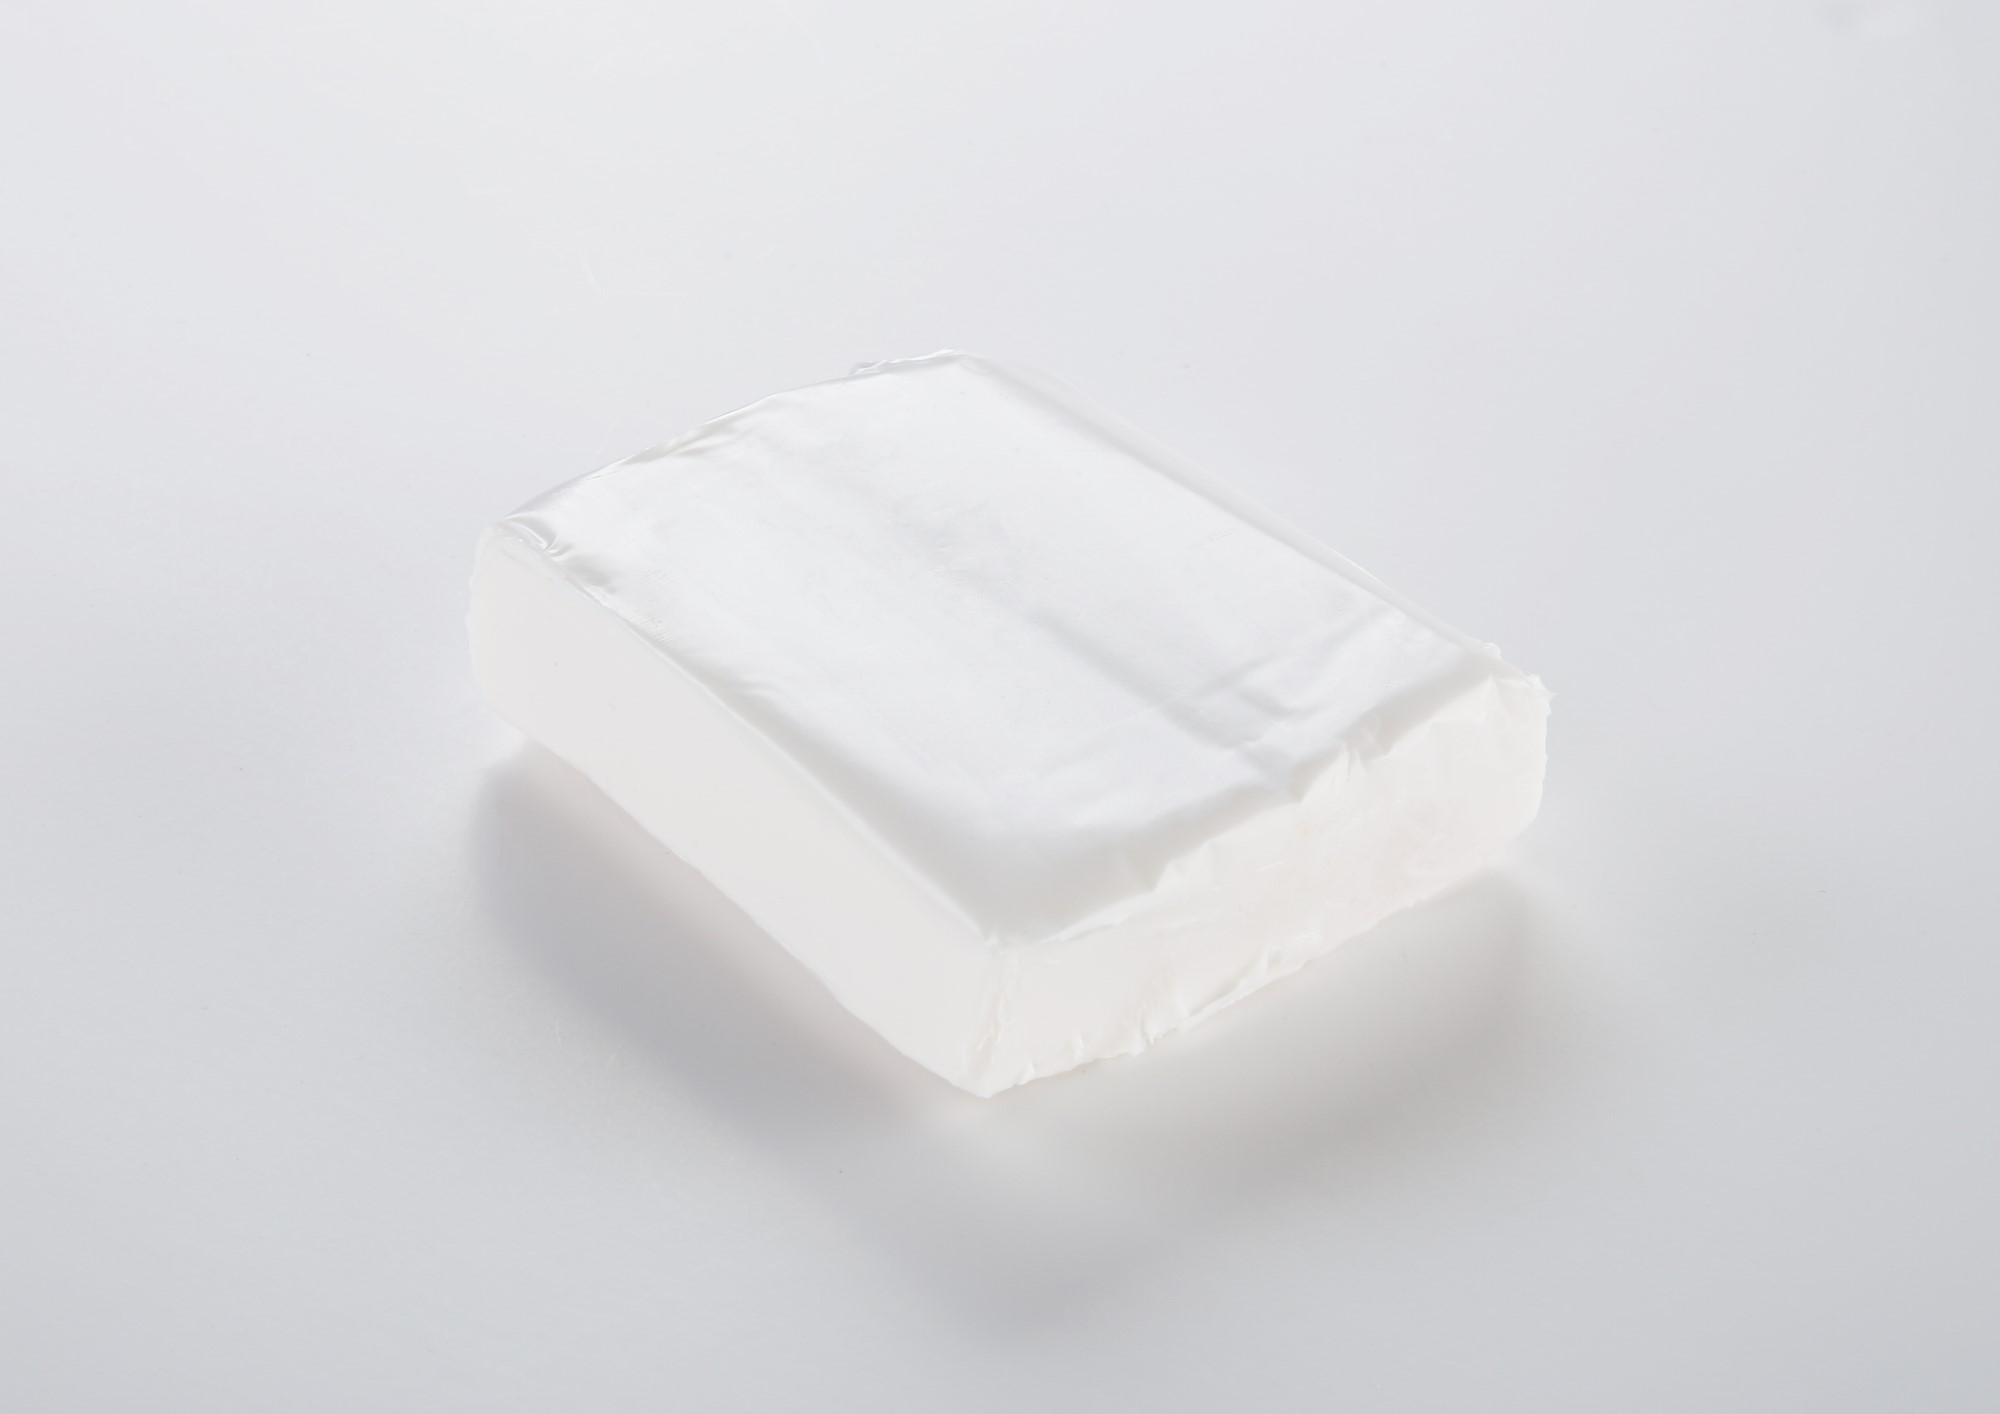 Arcilla polimérica Cernit - translúcido blanco Translucent 250g